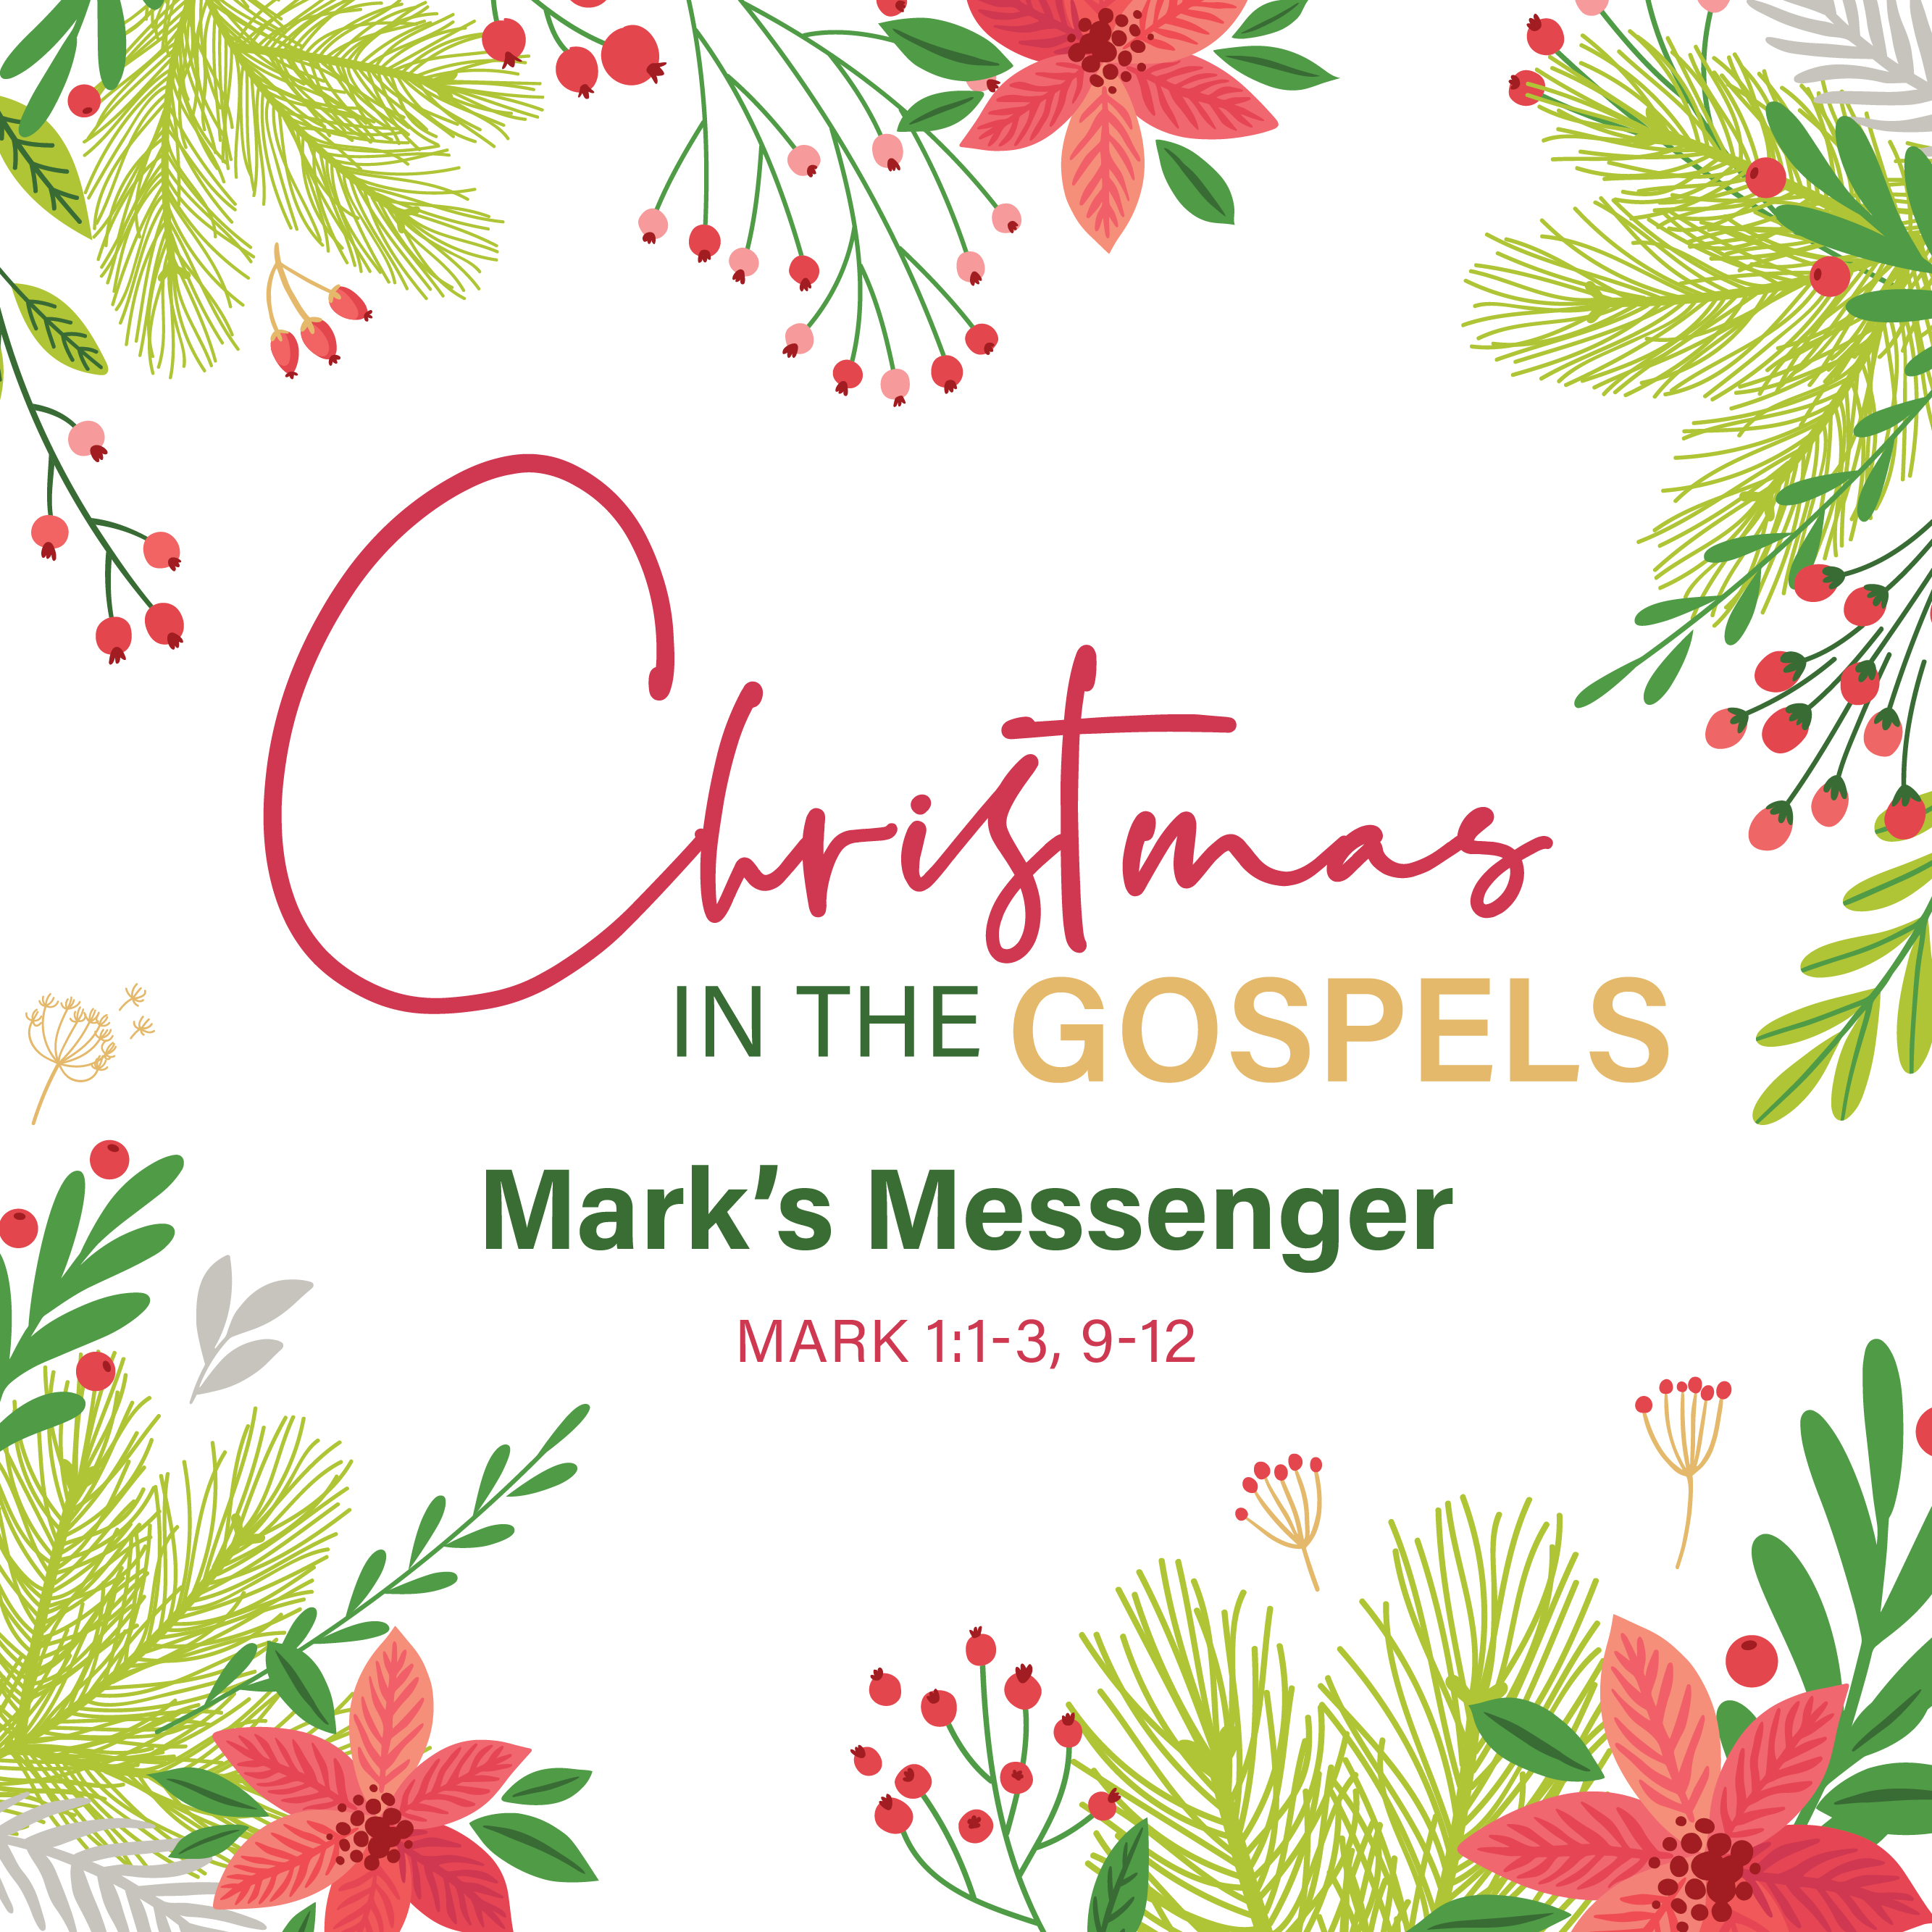 Sunday, December 3
8:15 & 10 AM

Christmas in the Gospels: Mark's Messenger
